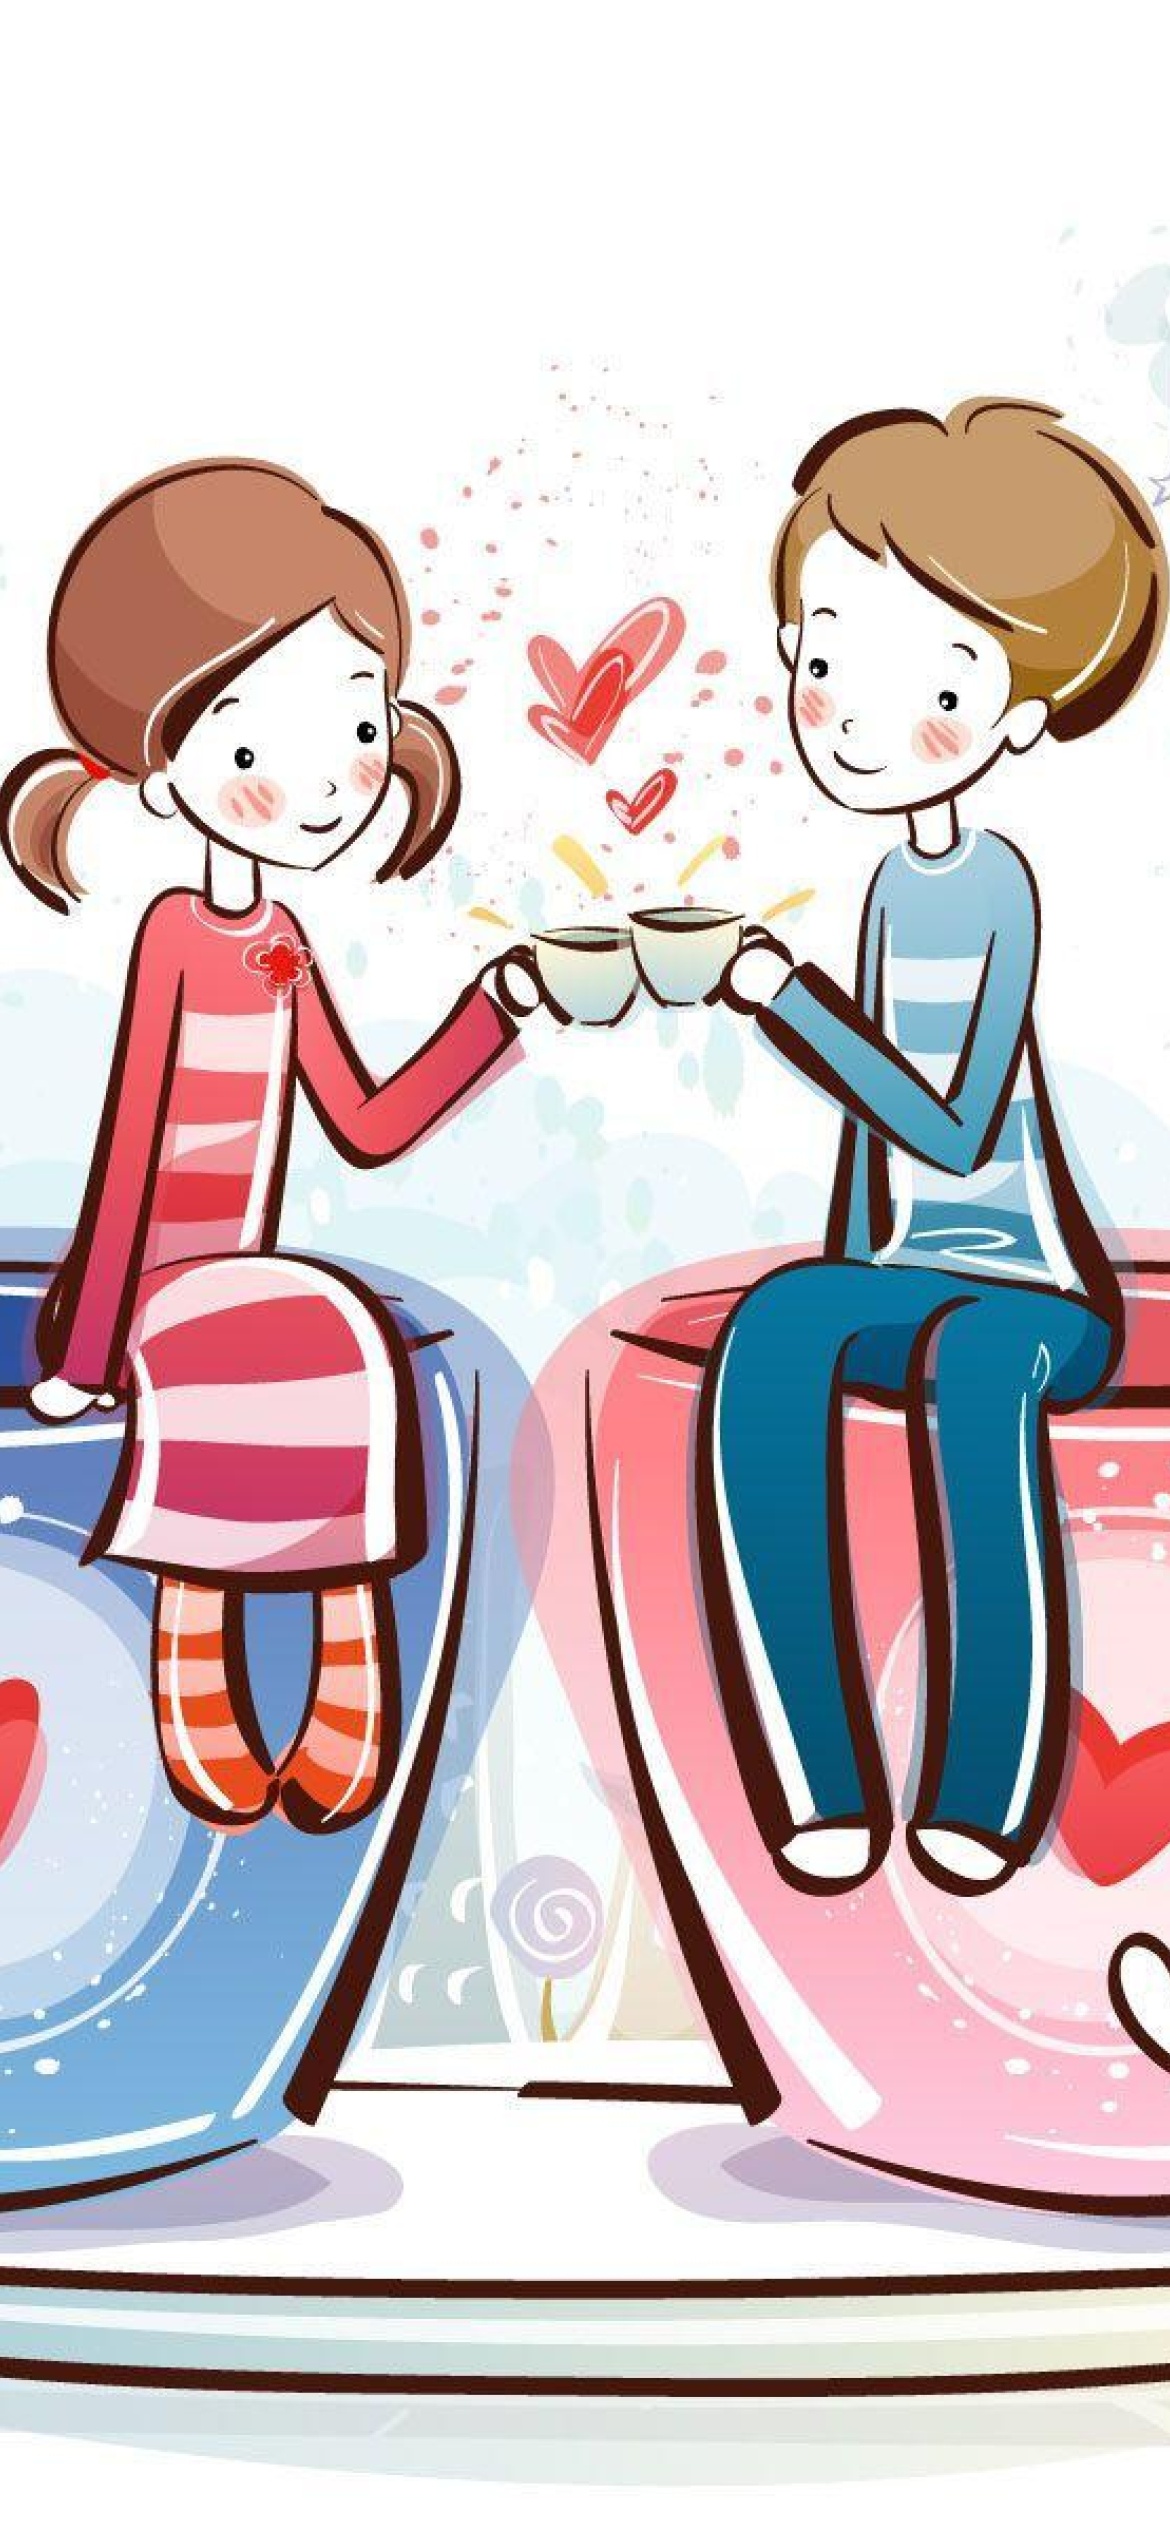 Das Valentine Cartoon Images Wallpaper 1170x2532